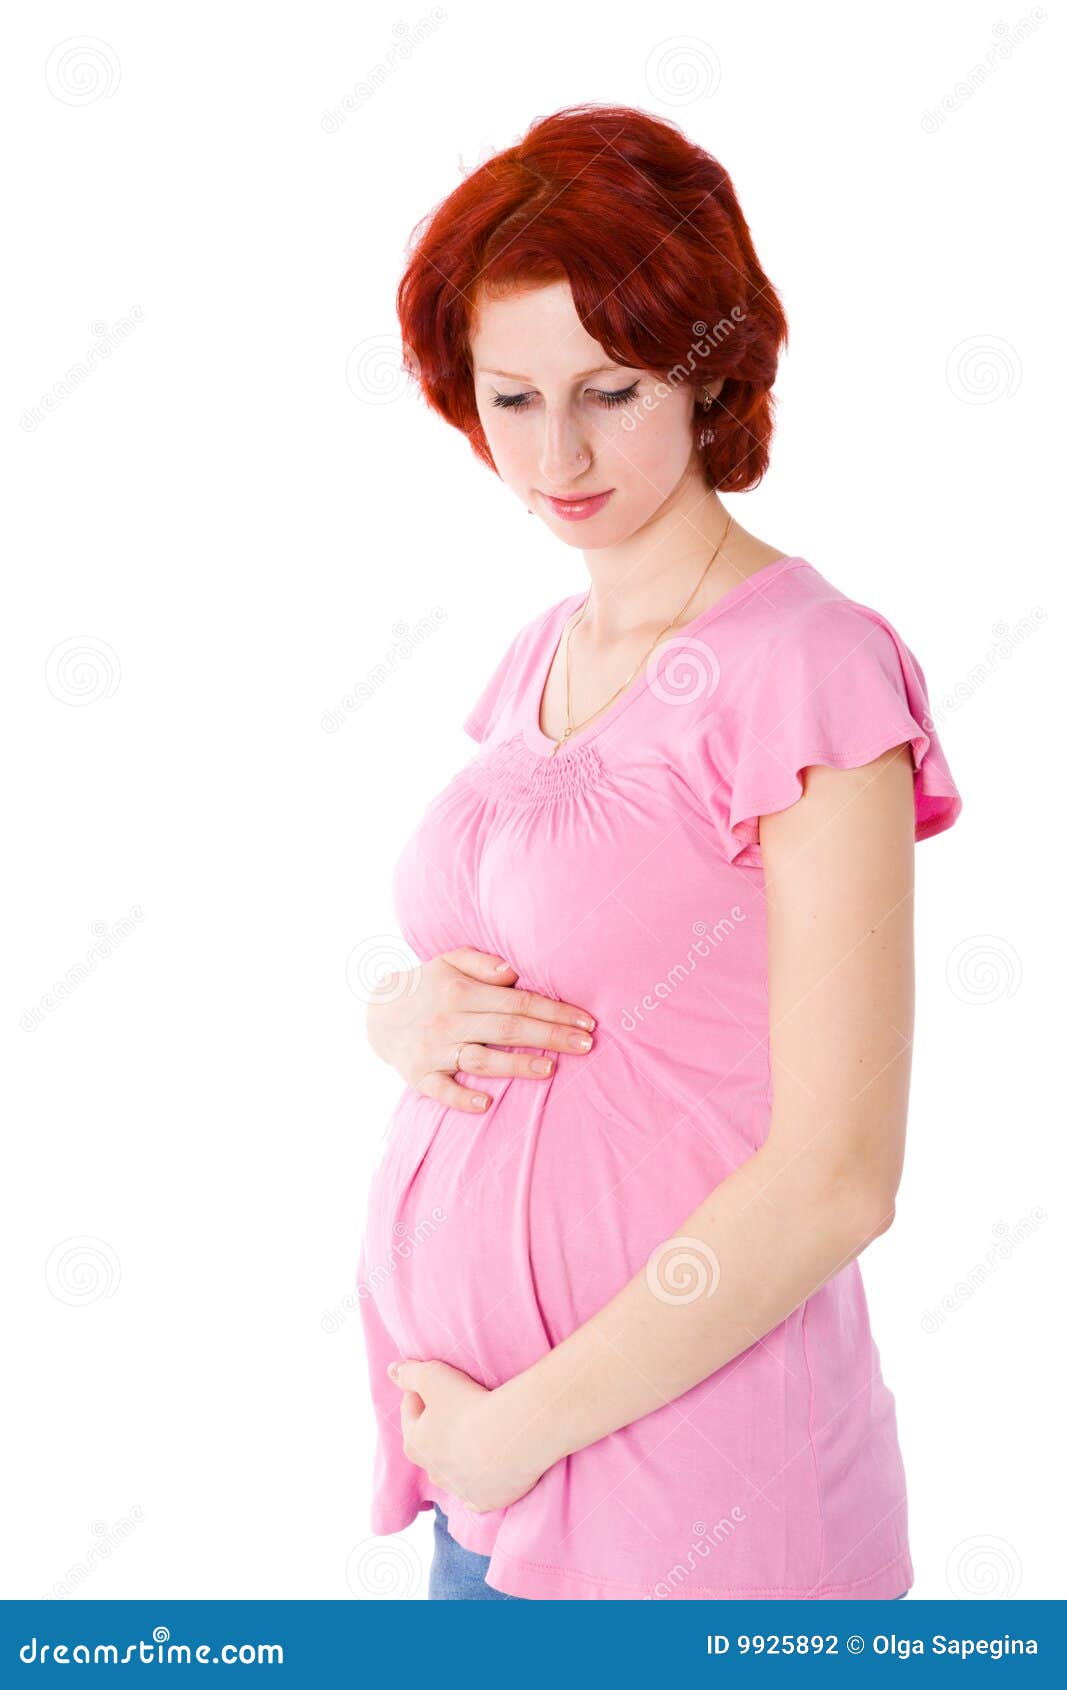 孕妇热伤风千万别喝生姜水，学会这5大妙招三天就能自愈 - 孕小帮